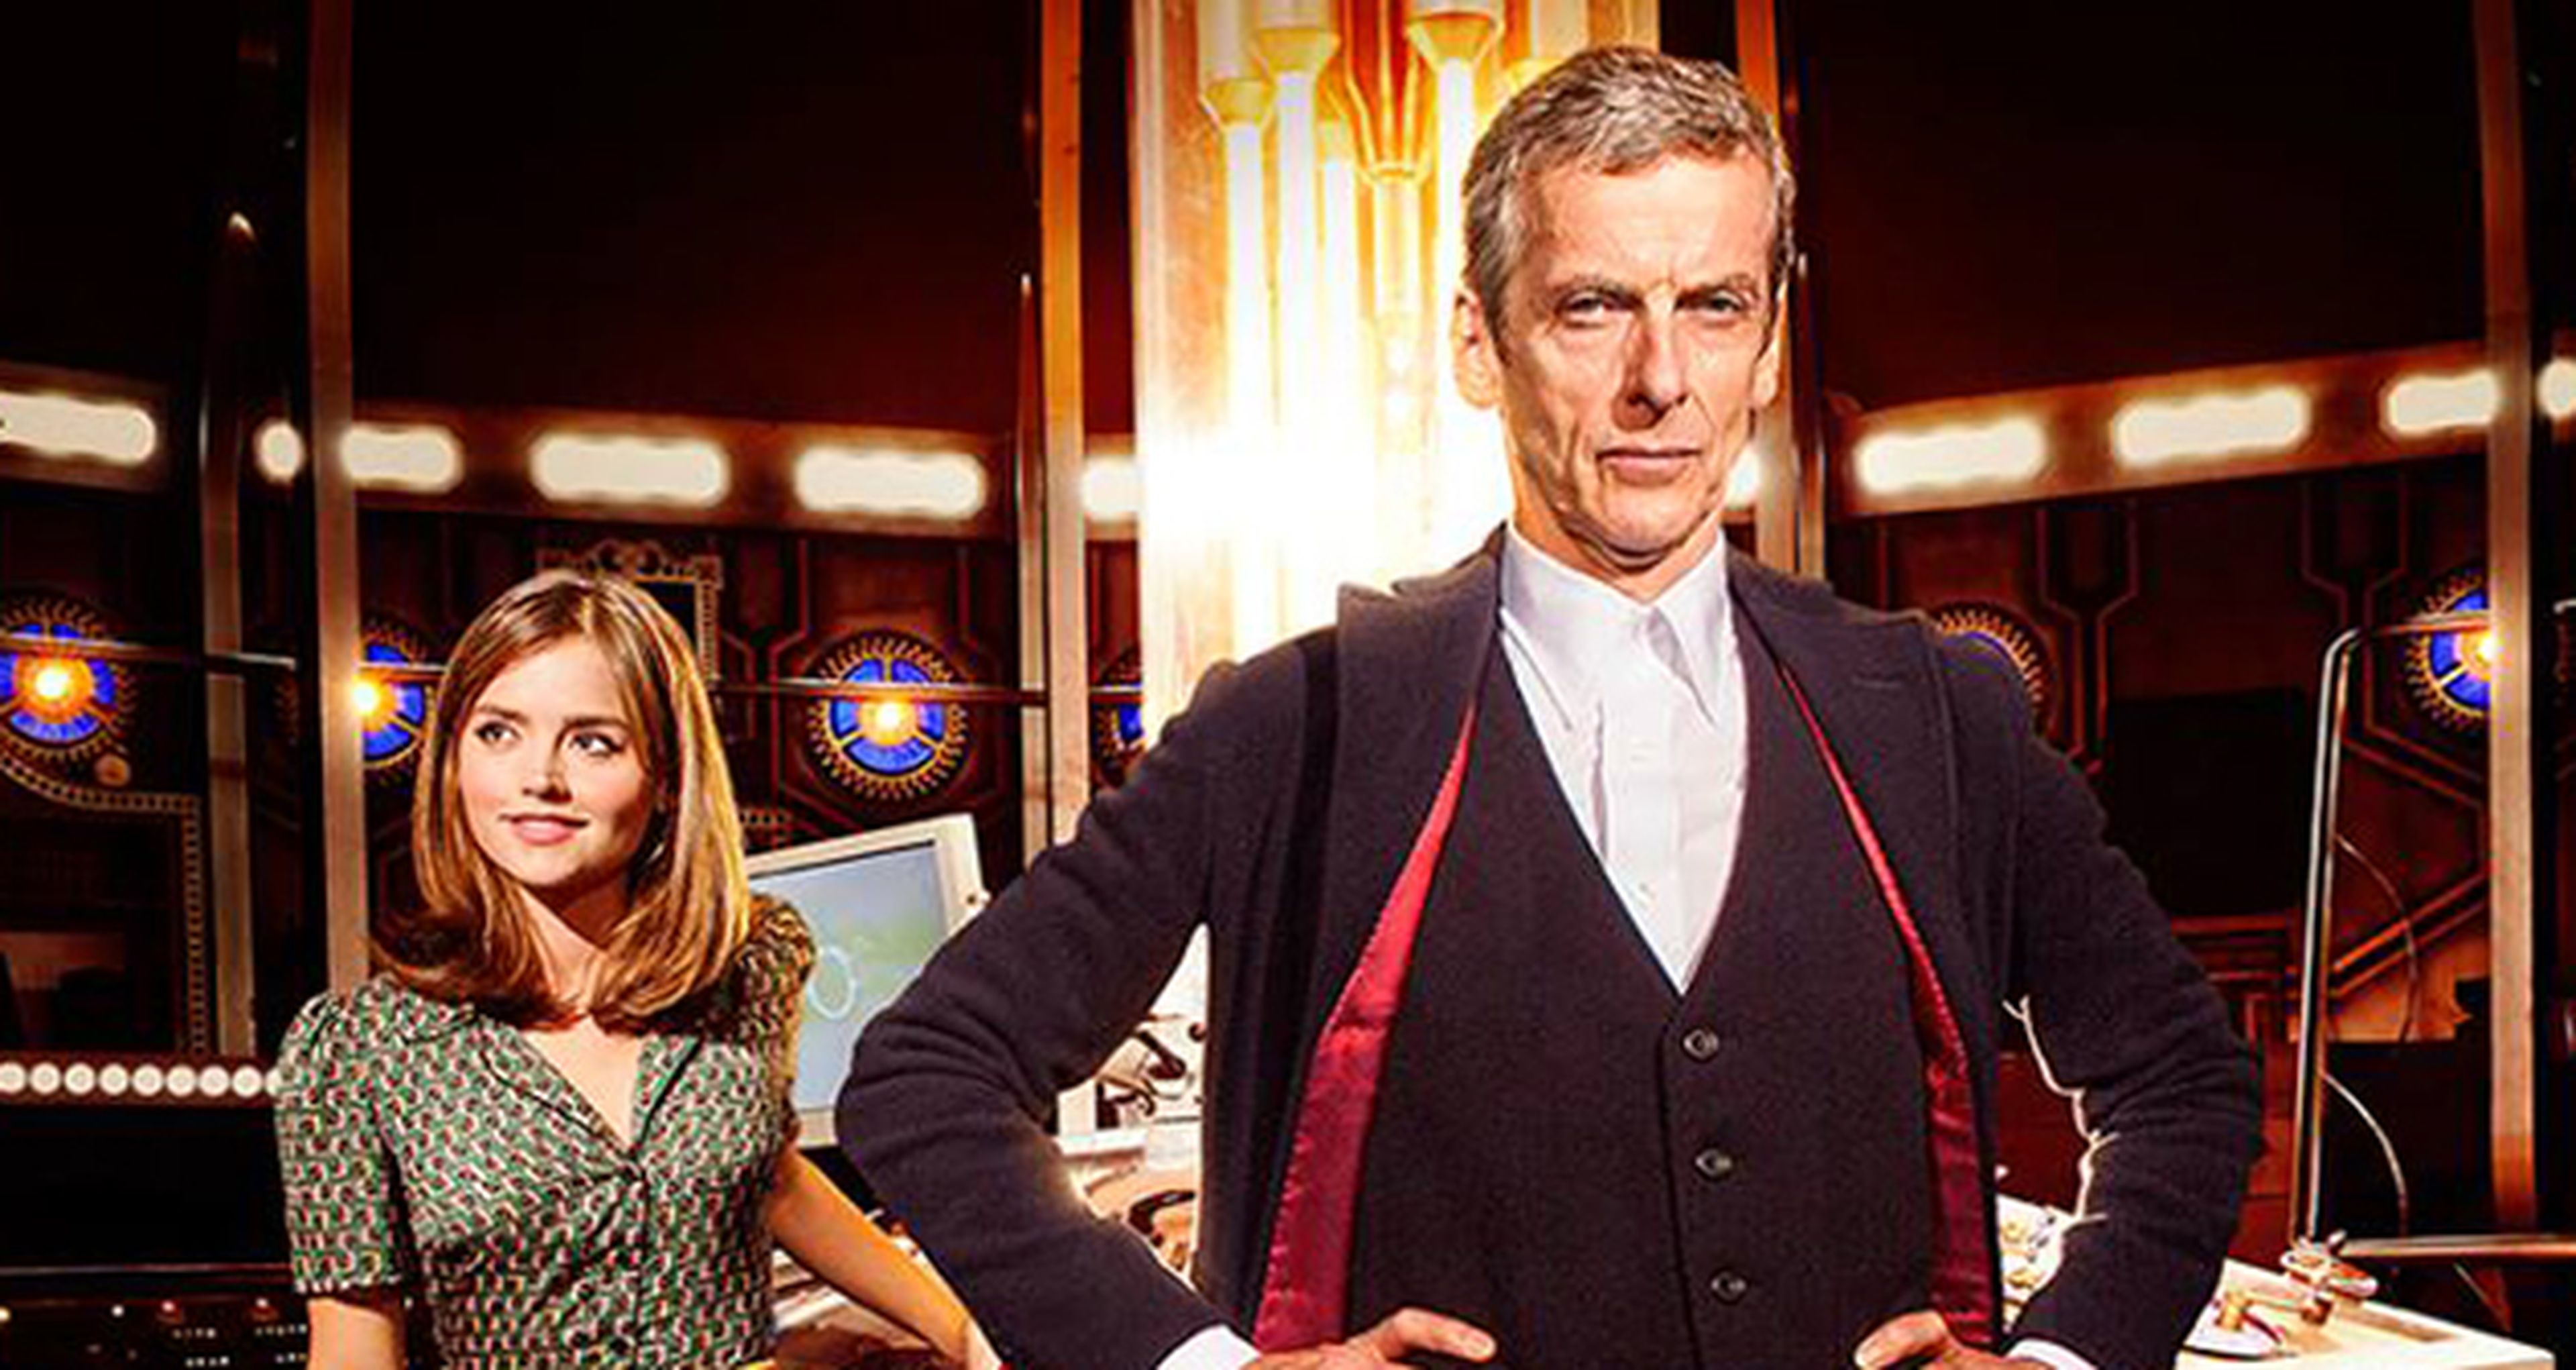 Am I a Good Man?: Tráiler de la 8ª Temporada de Doctor Who